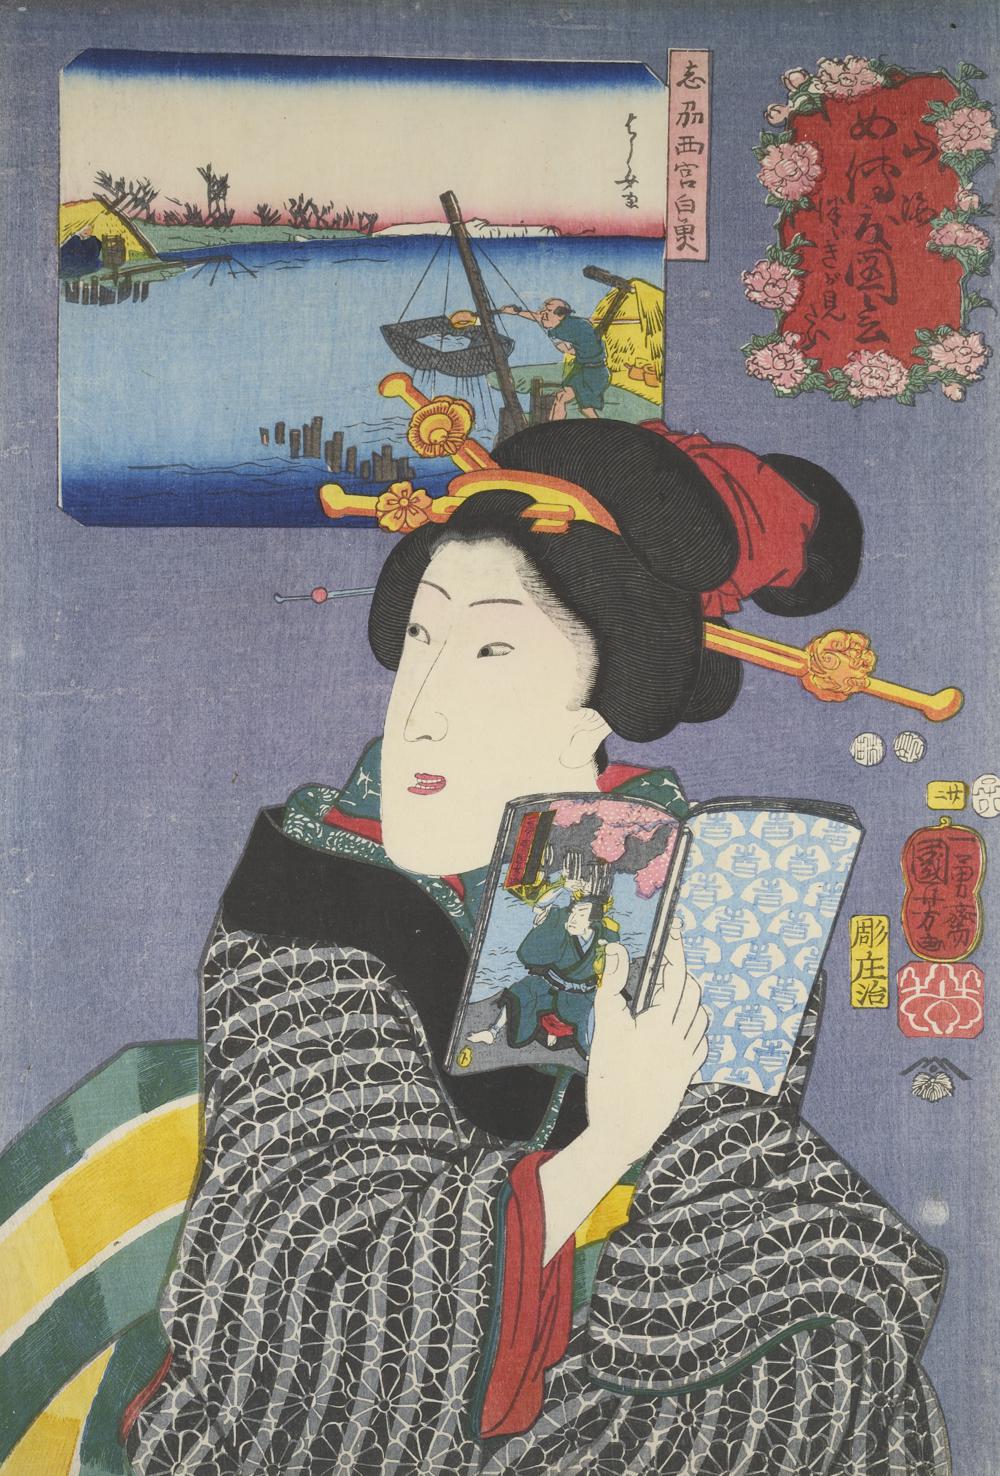 MKG_Hokusai_x_Manga_Kuniyoshi_Frau_mit_Manga